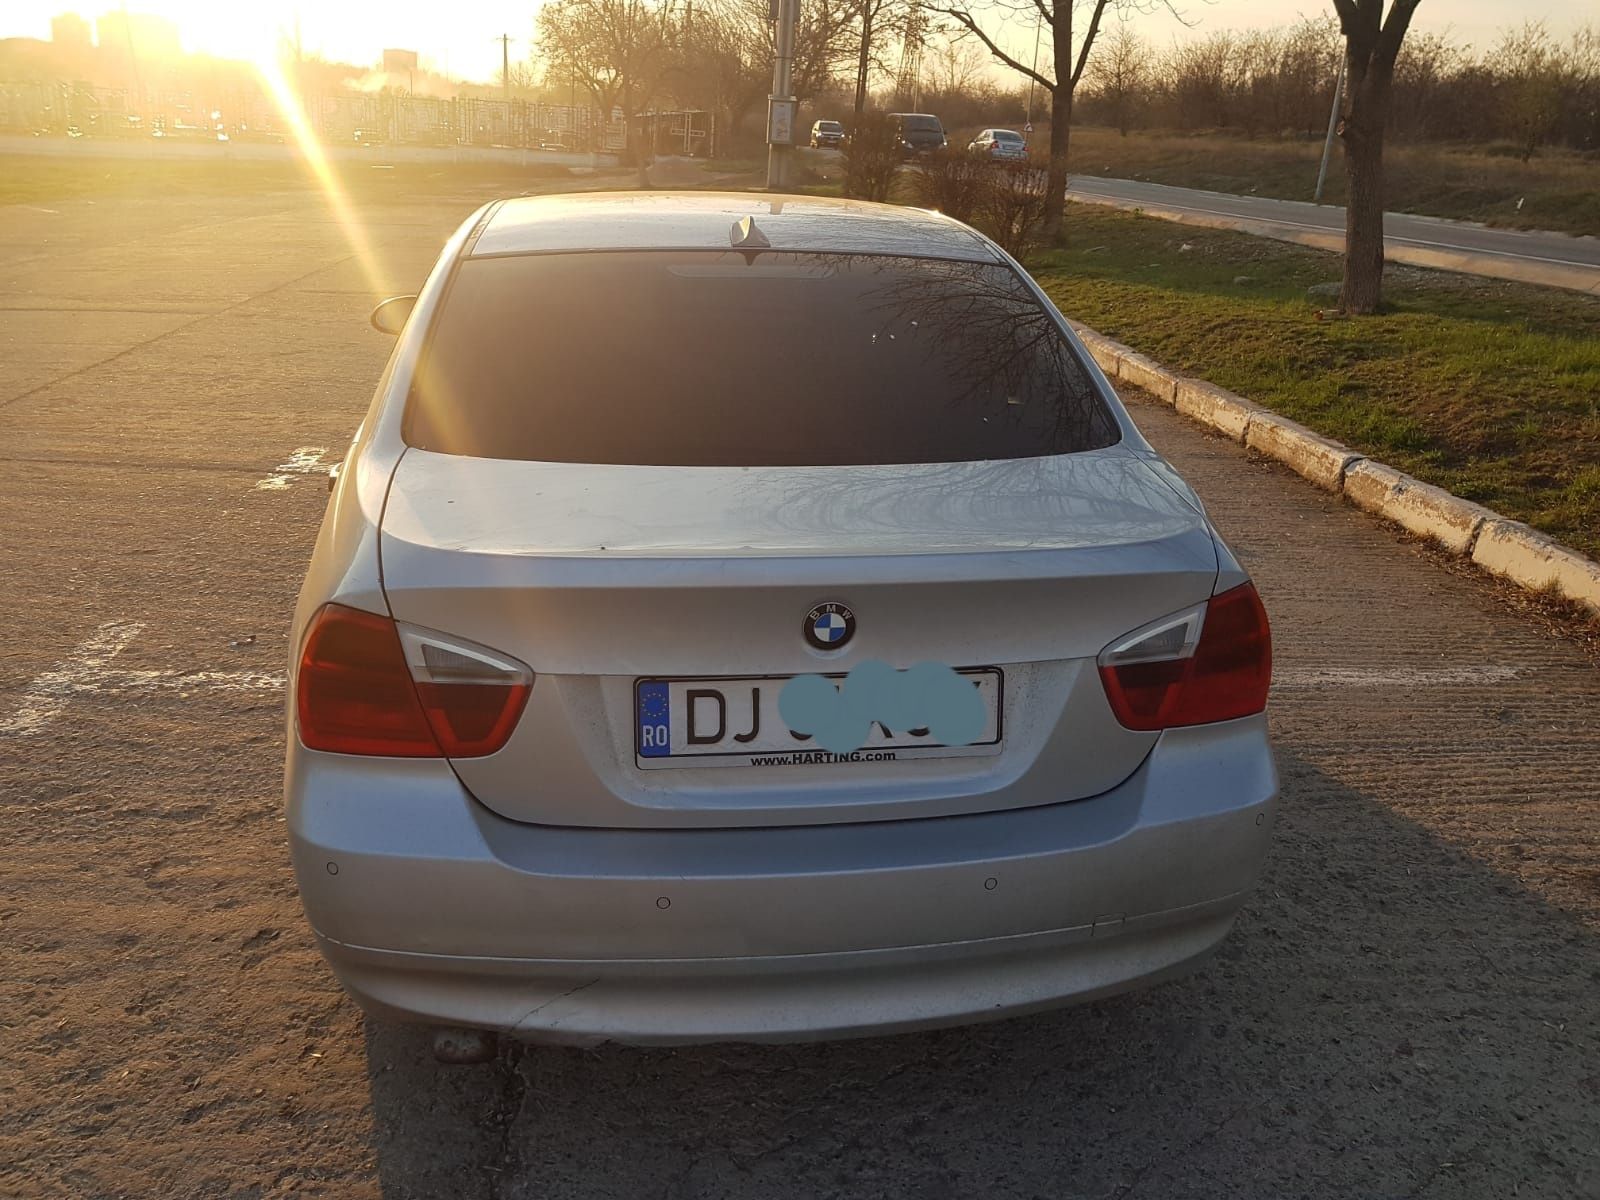 Vând mașină BMW seria 3